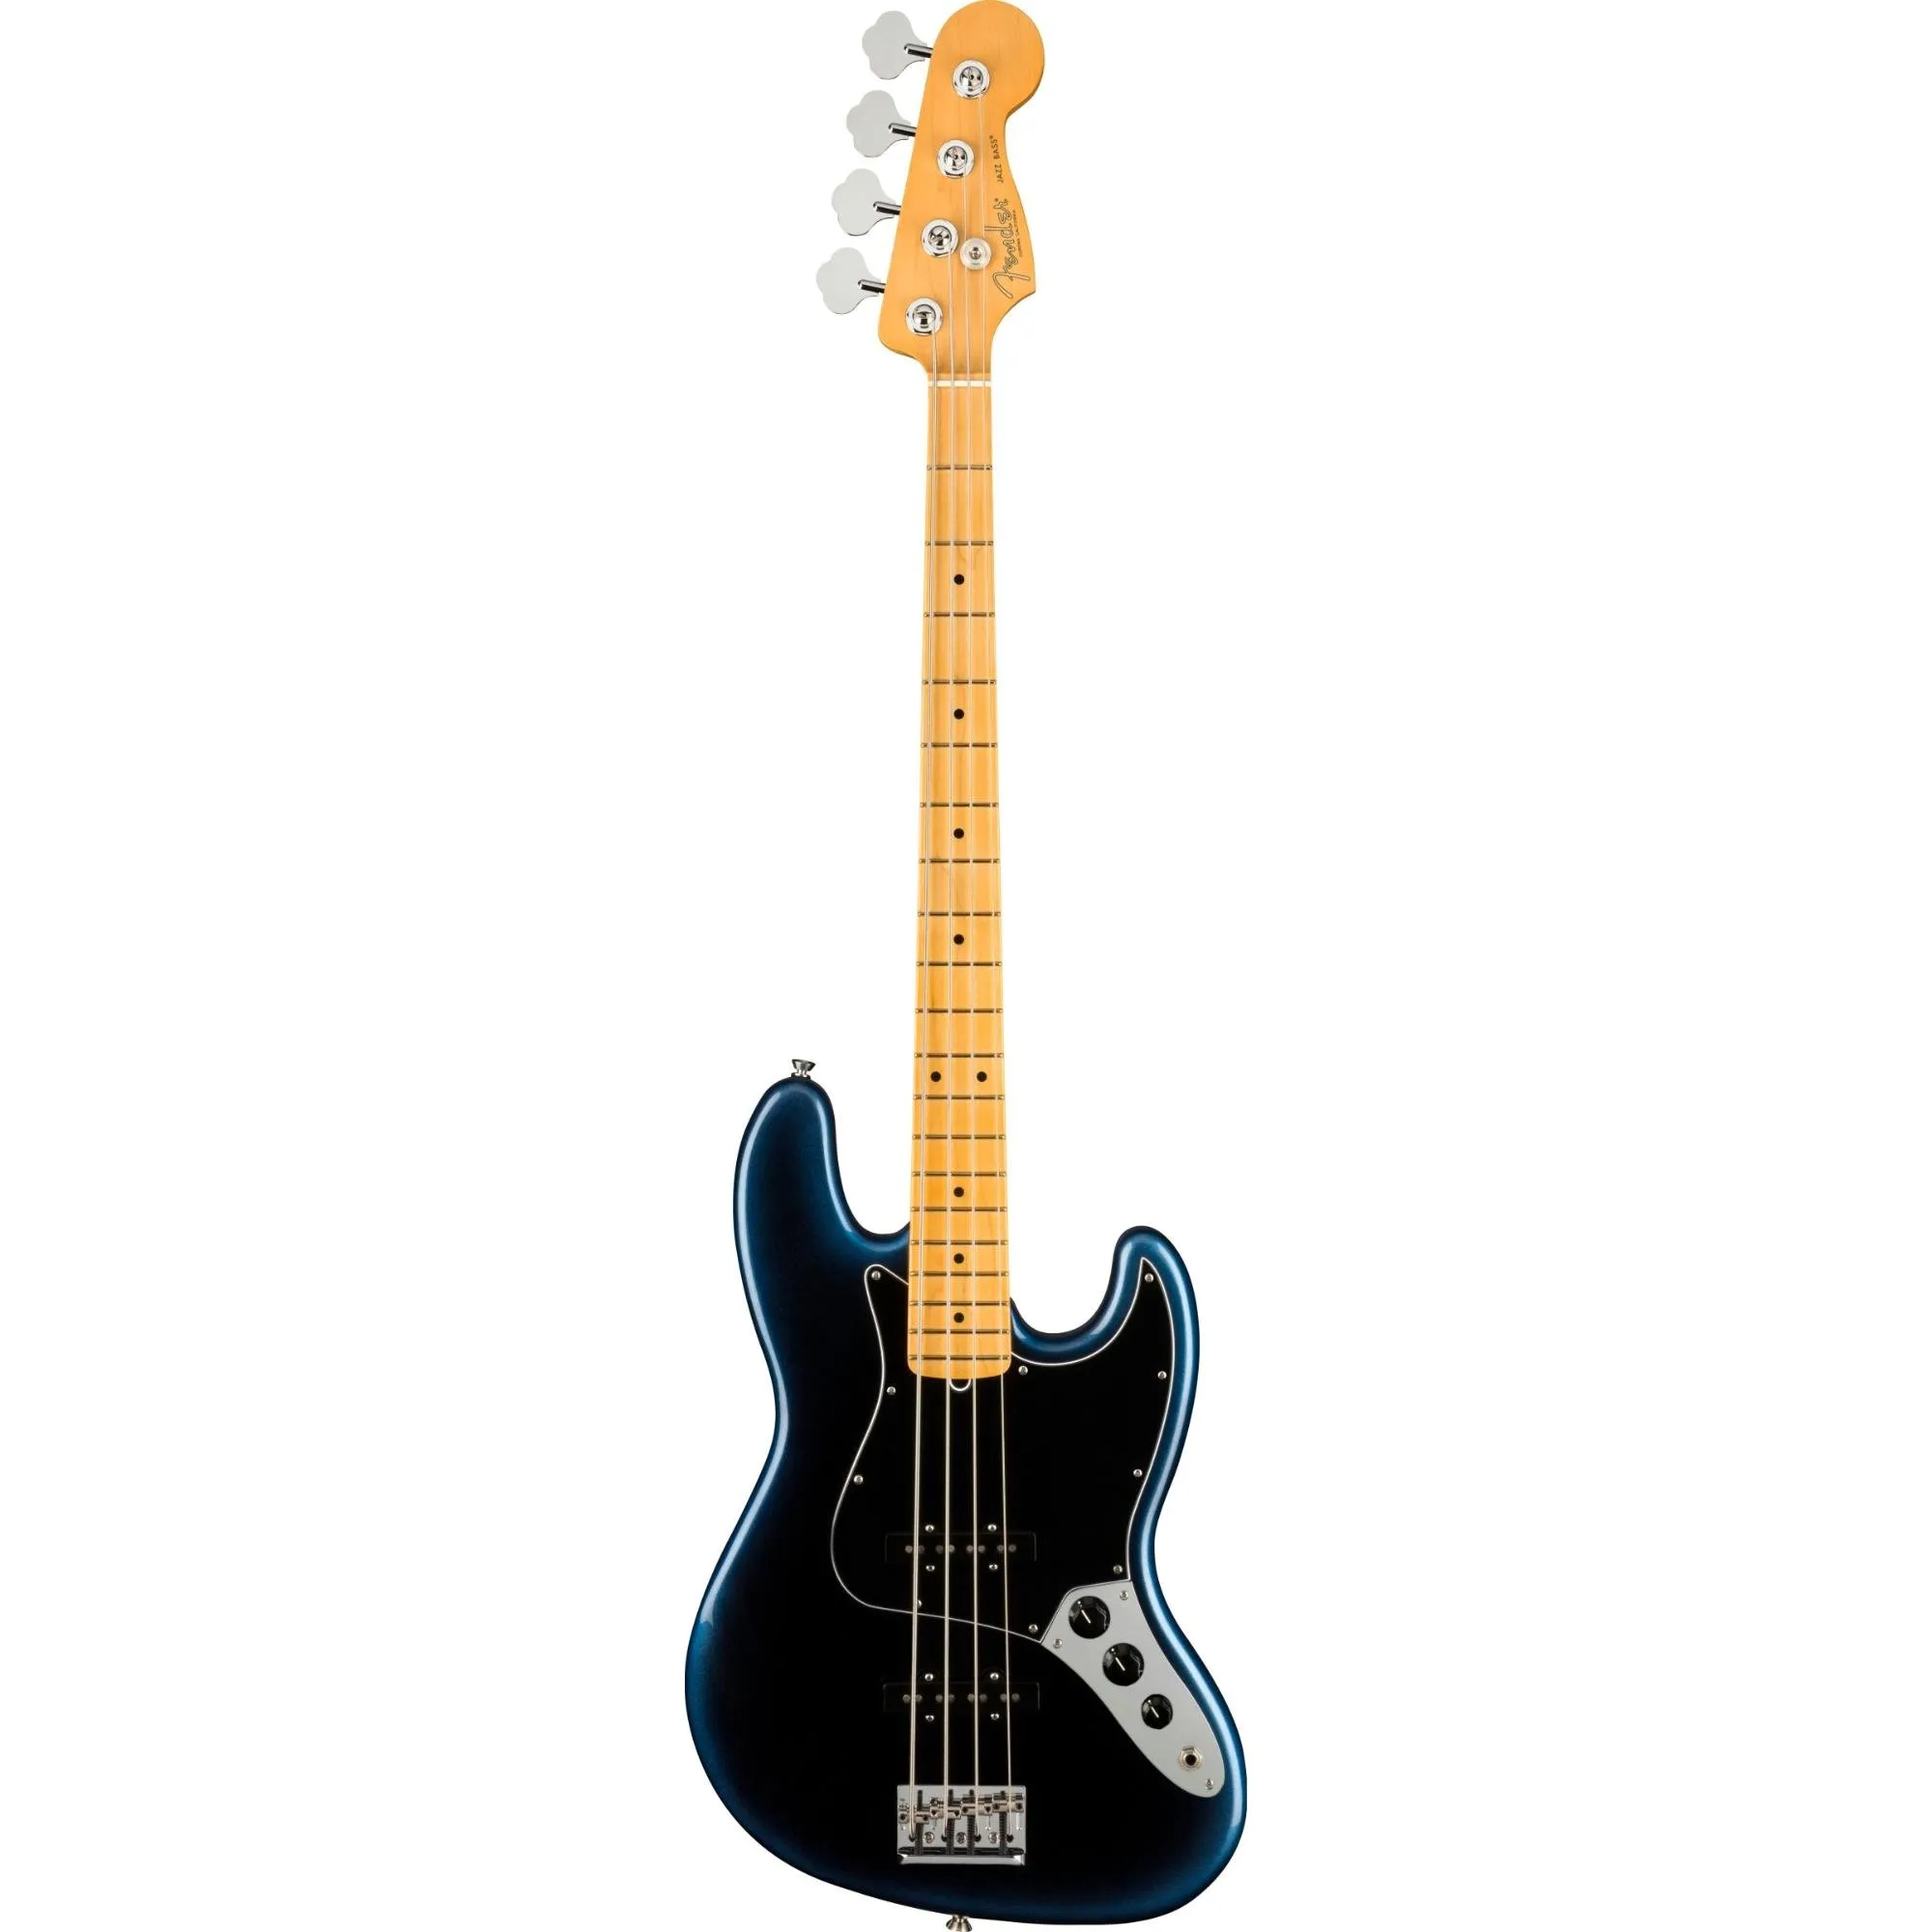 Contrabaixo Jazz Bass Fender American Professional II Dark Night por 21.504,99 à vista no boleto/pix ou parcele em até 12x sem juros. Compre na loja Mundomax!